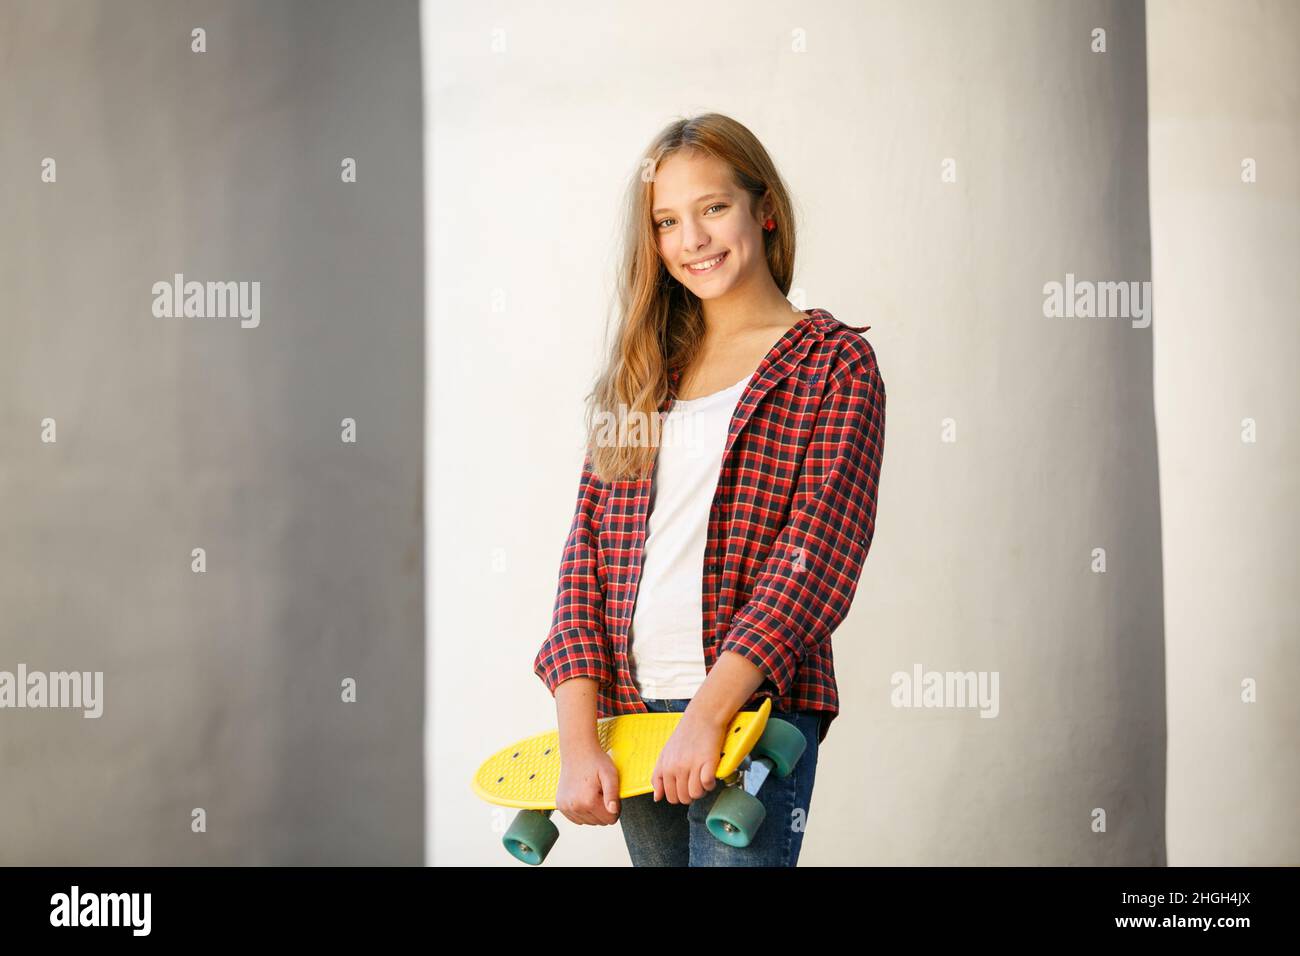 Lifestyle horizontales Outdoor-Porträt eines jungen lächelnden Teenagers mit einem gelben Skateboard und einem roten karierten Hemd Stockfoto